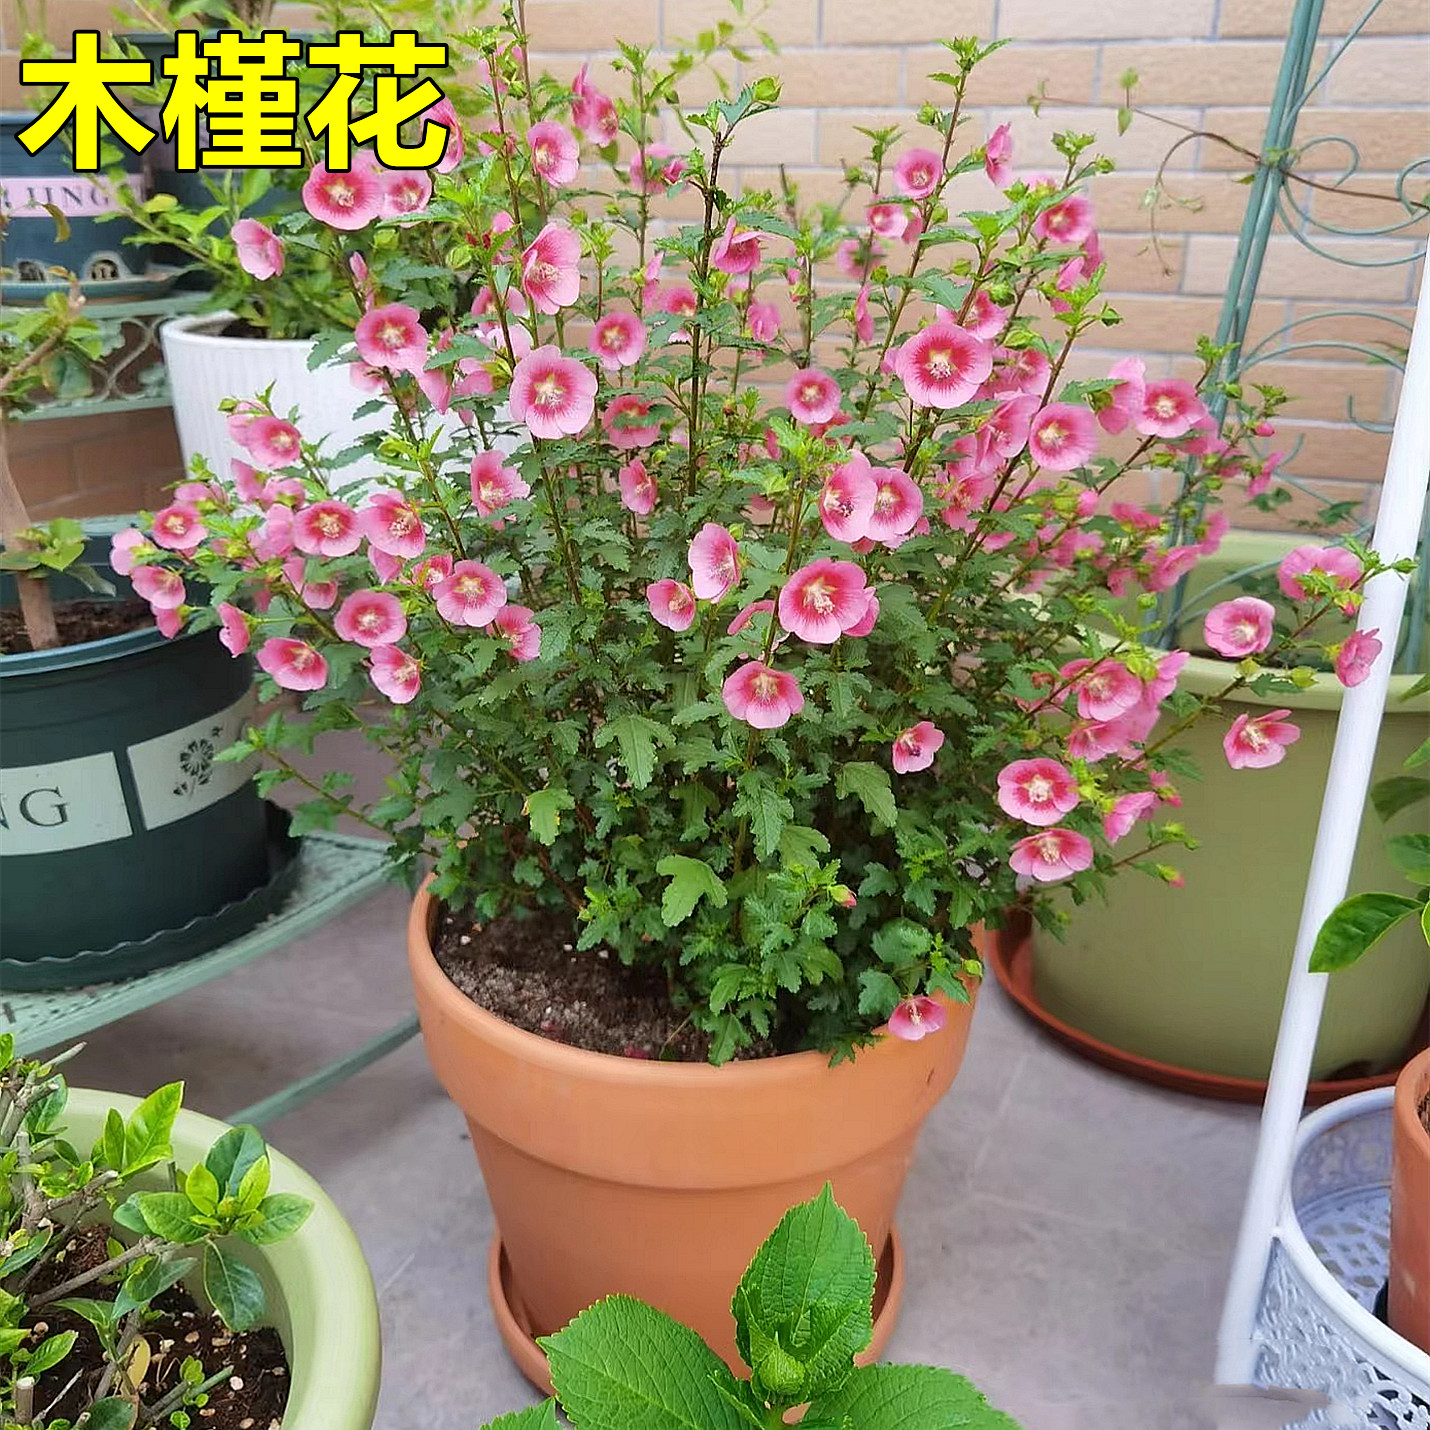 小木槿花卉盆栽棒棒糖耐寒耐热庭院室